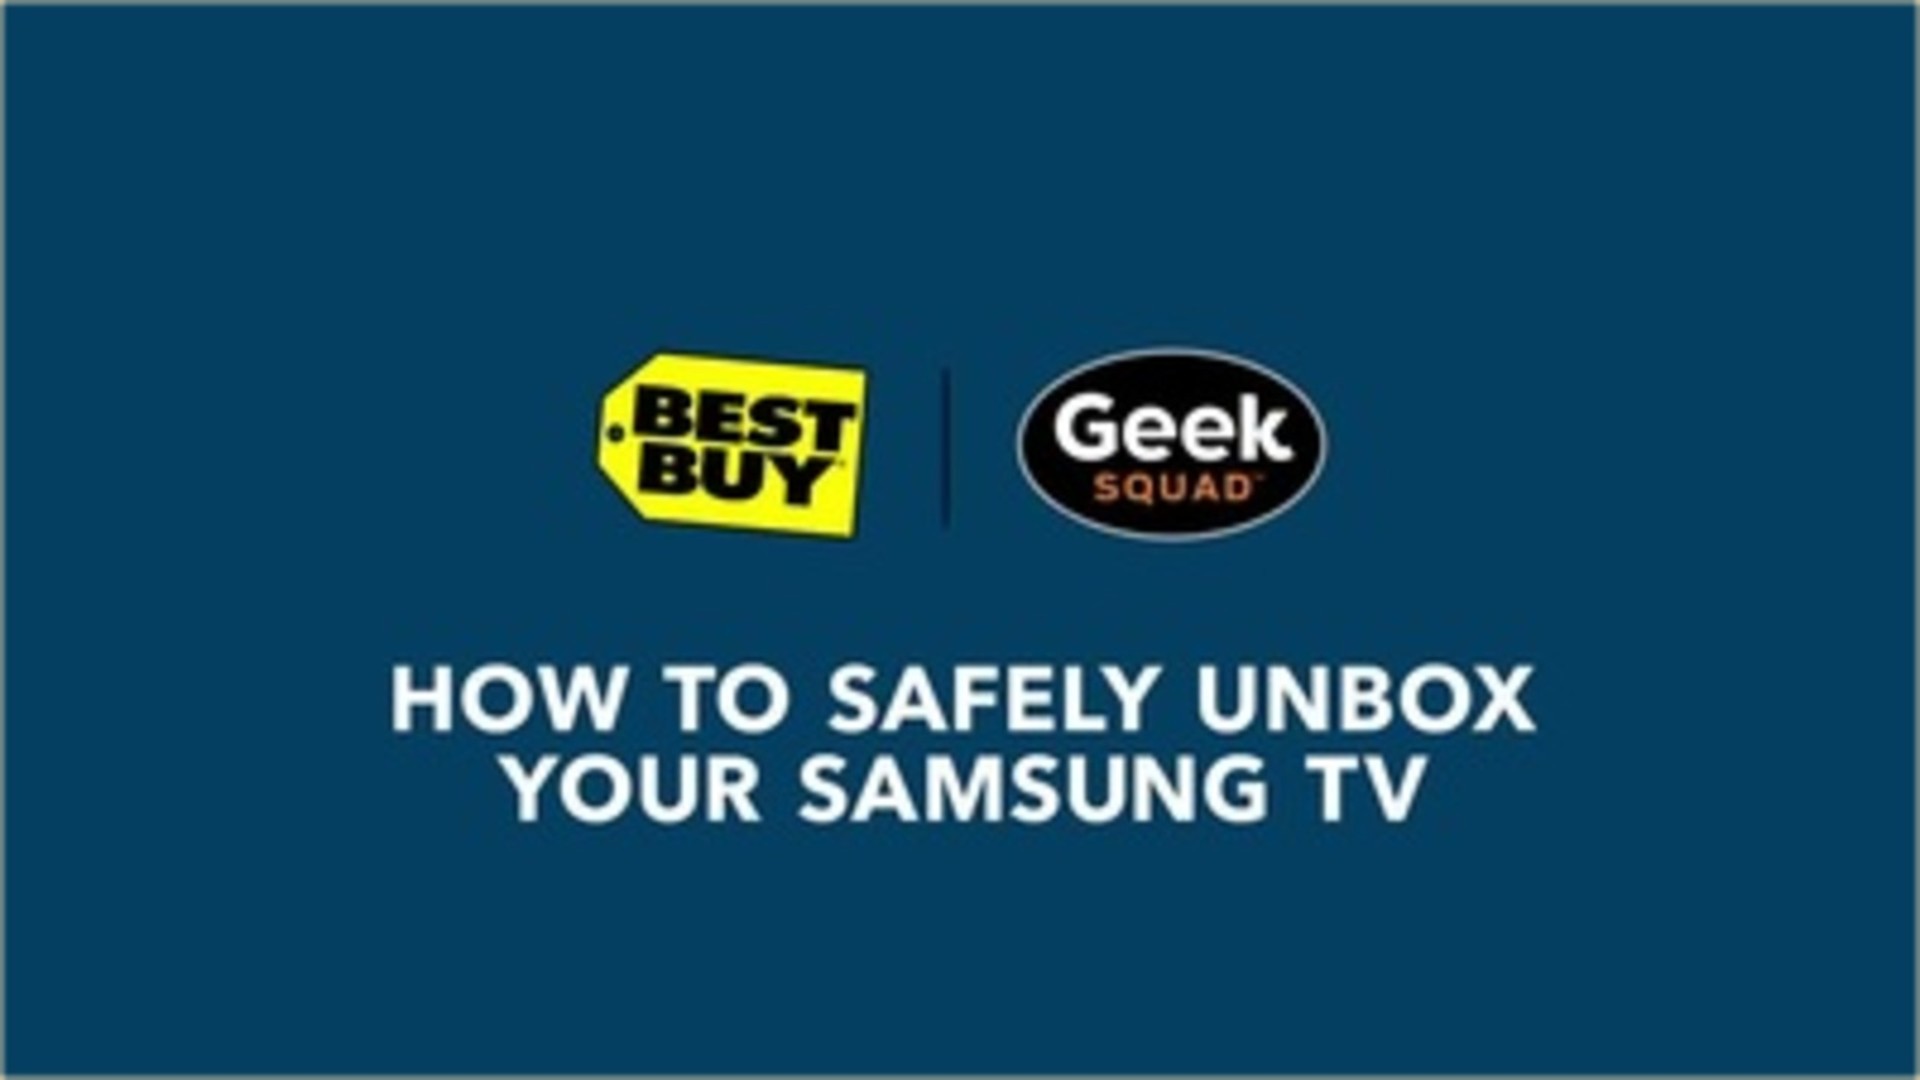 Samsung 40 Class 5 Series LED Full HD Smart Tizen TV UN40N5200AFXZA - Best  Buy